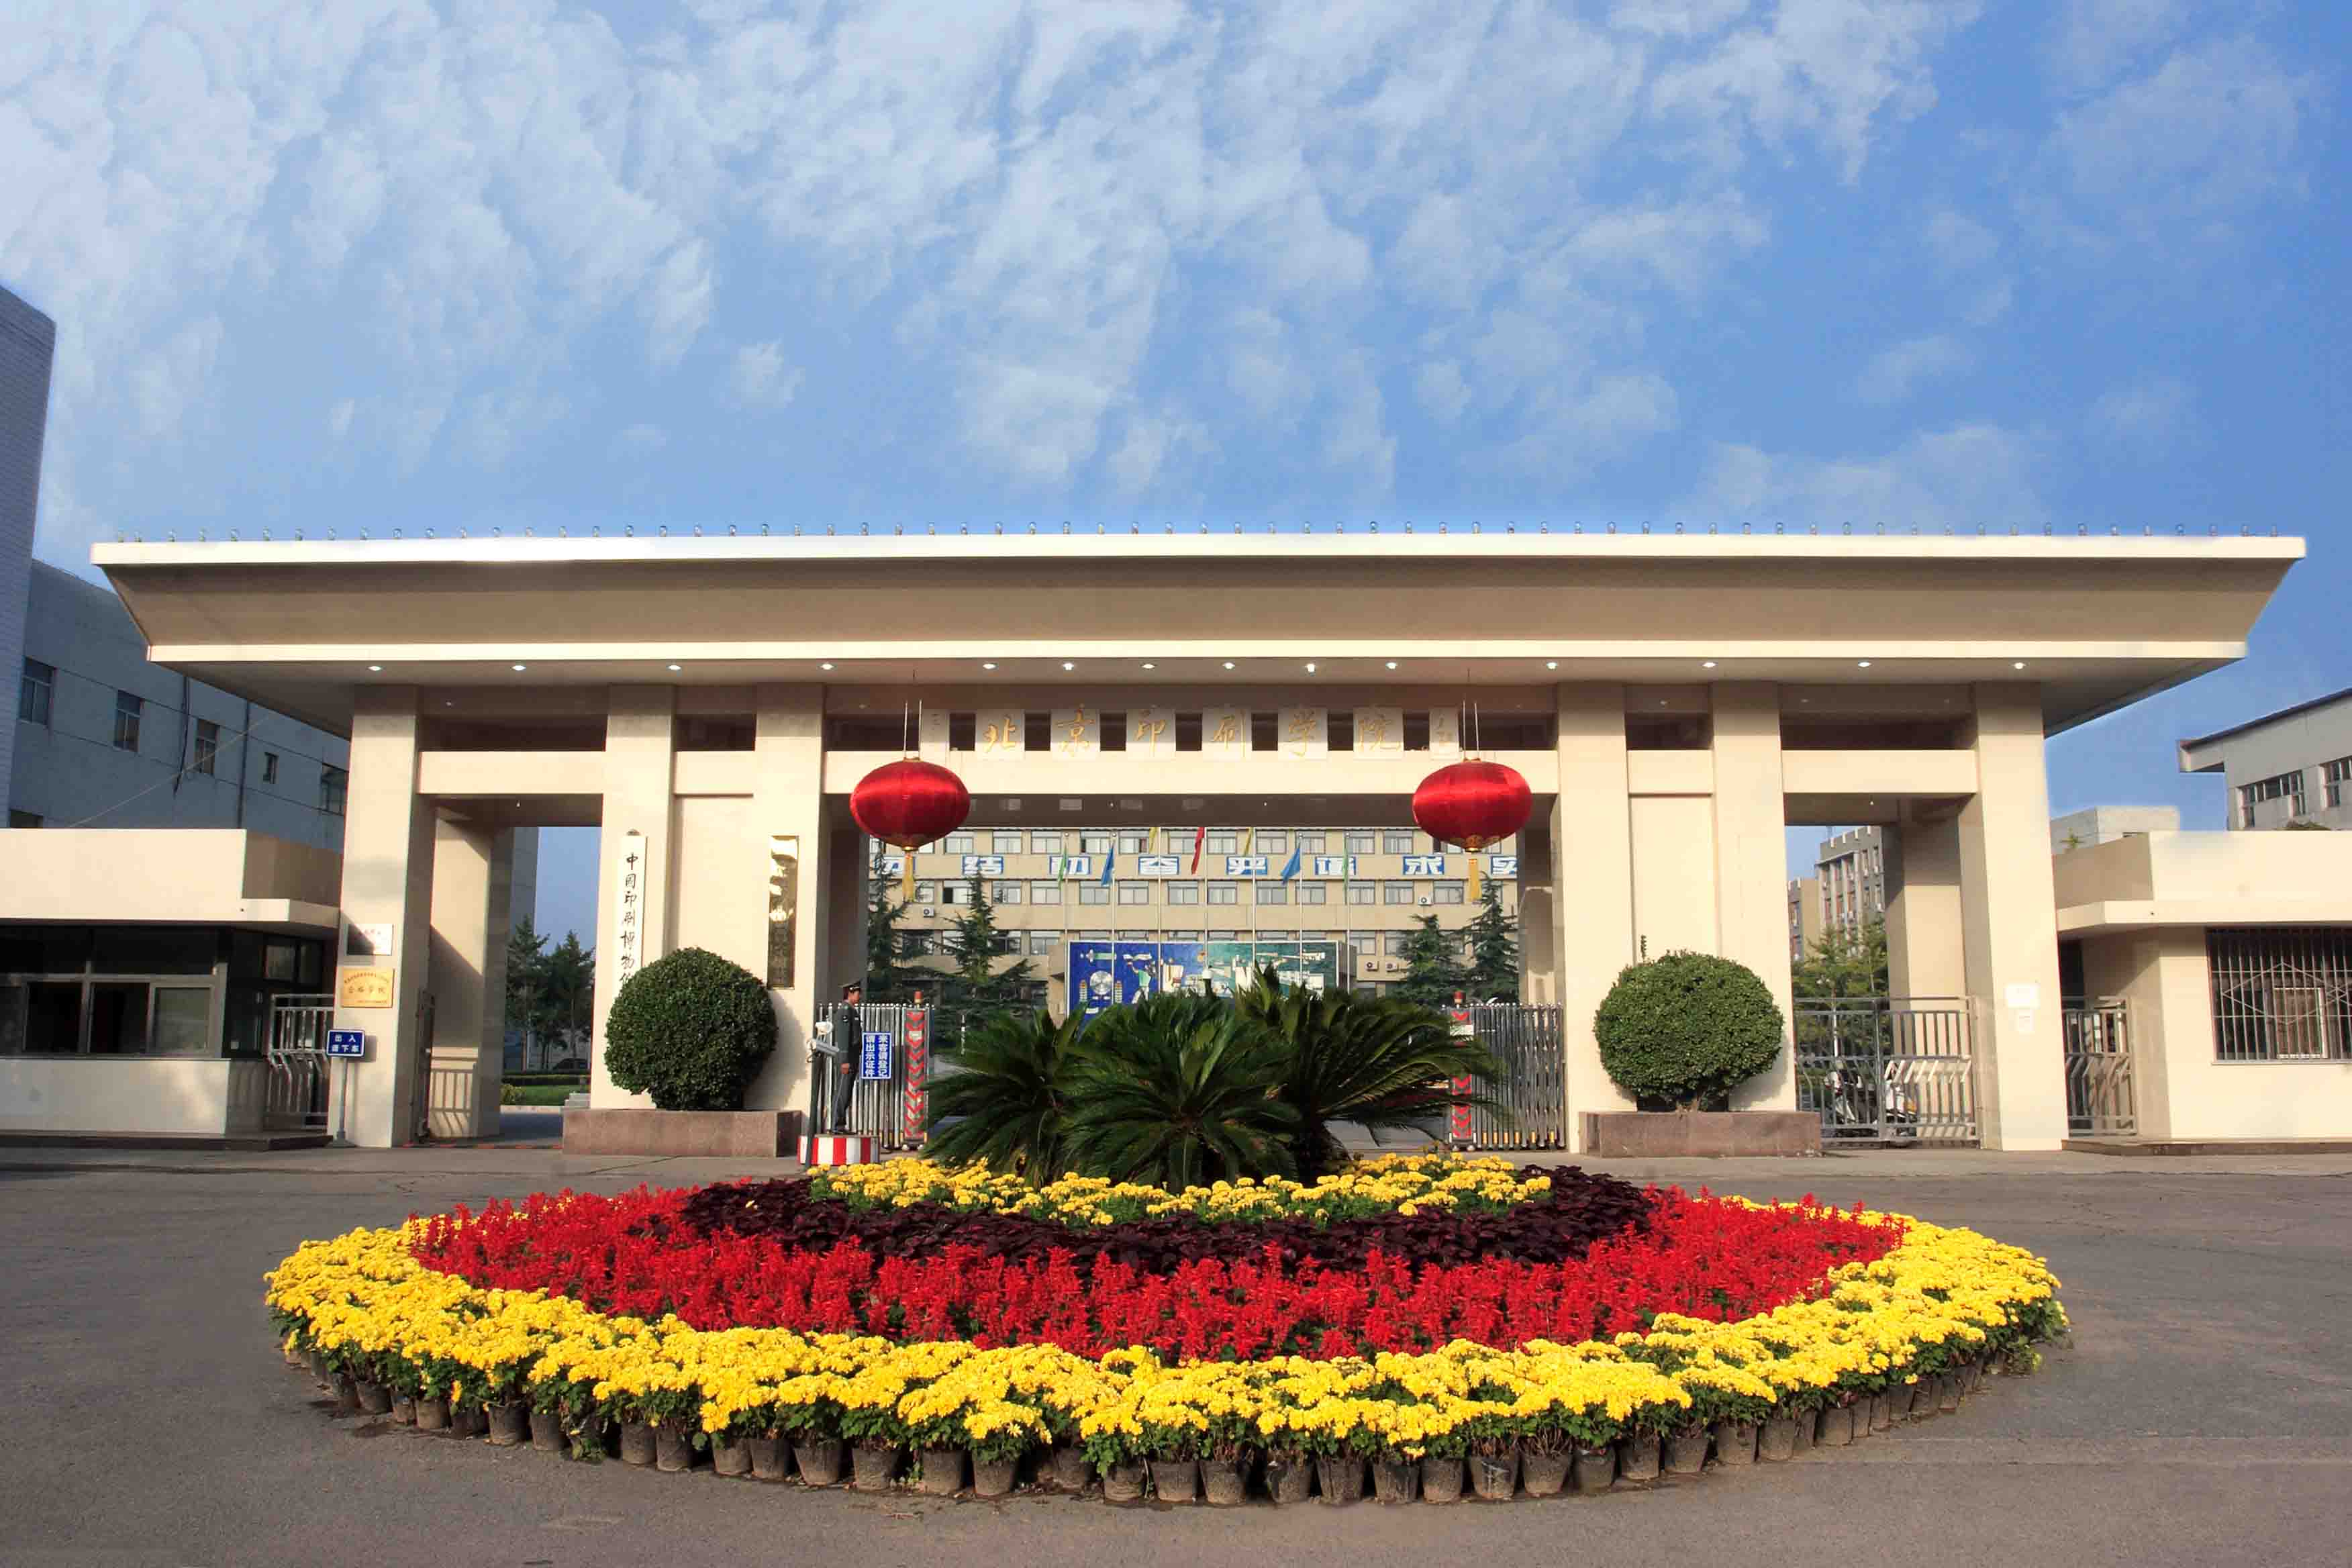 北京印刷学院 校区图片